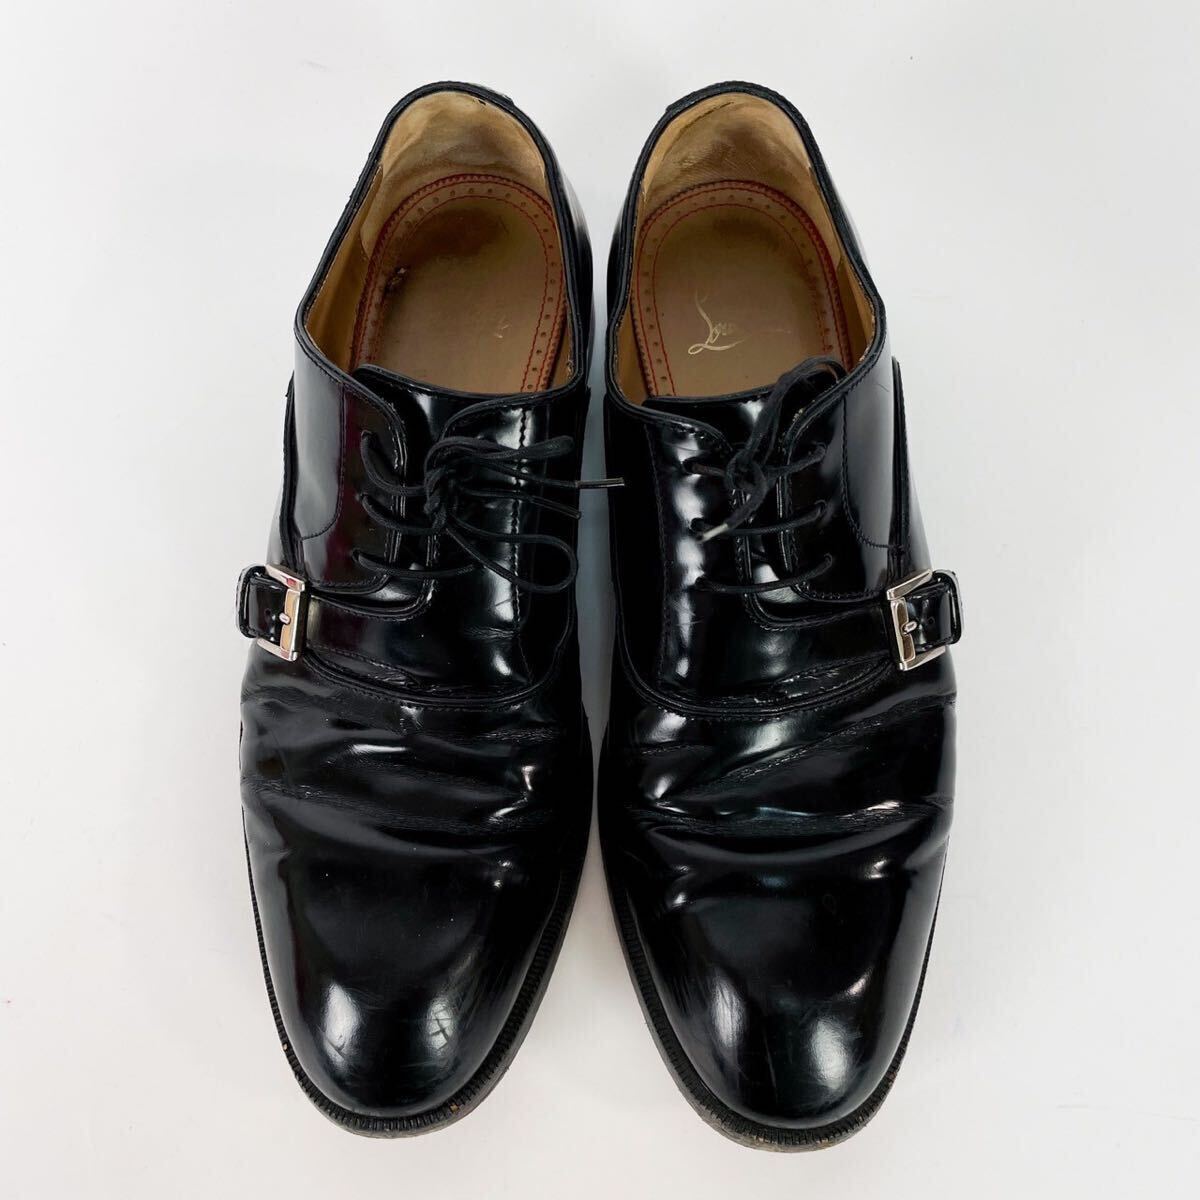 Christian Louboutin クリスチャン ルブタン レザー ビジネスシューズ サイズ40(約25cm) ブラック 革靴 の画像2